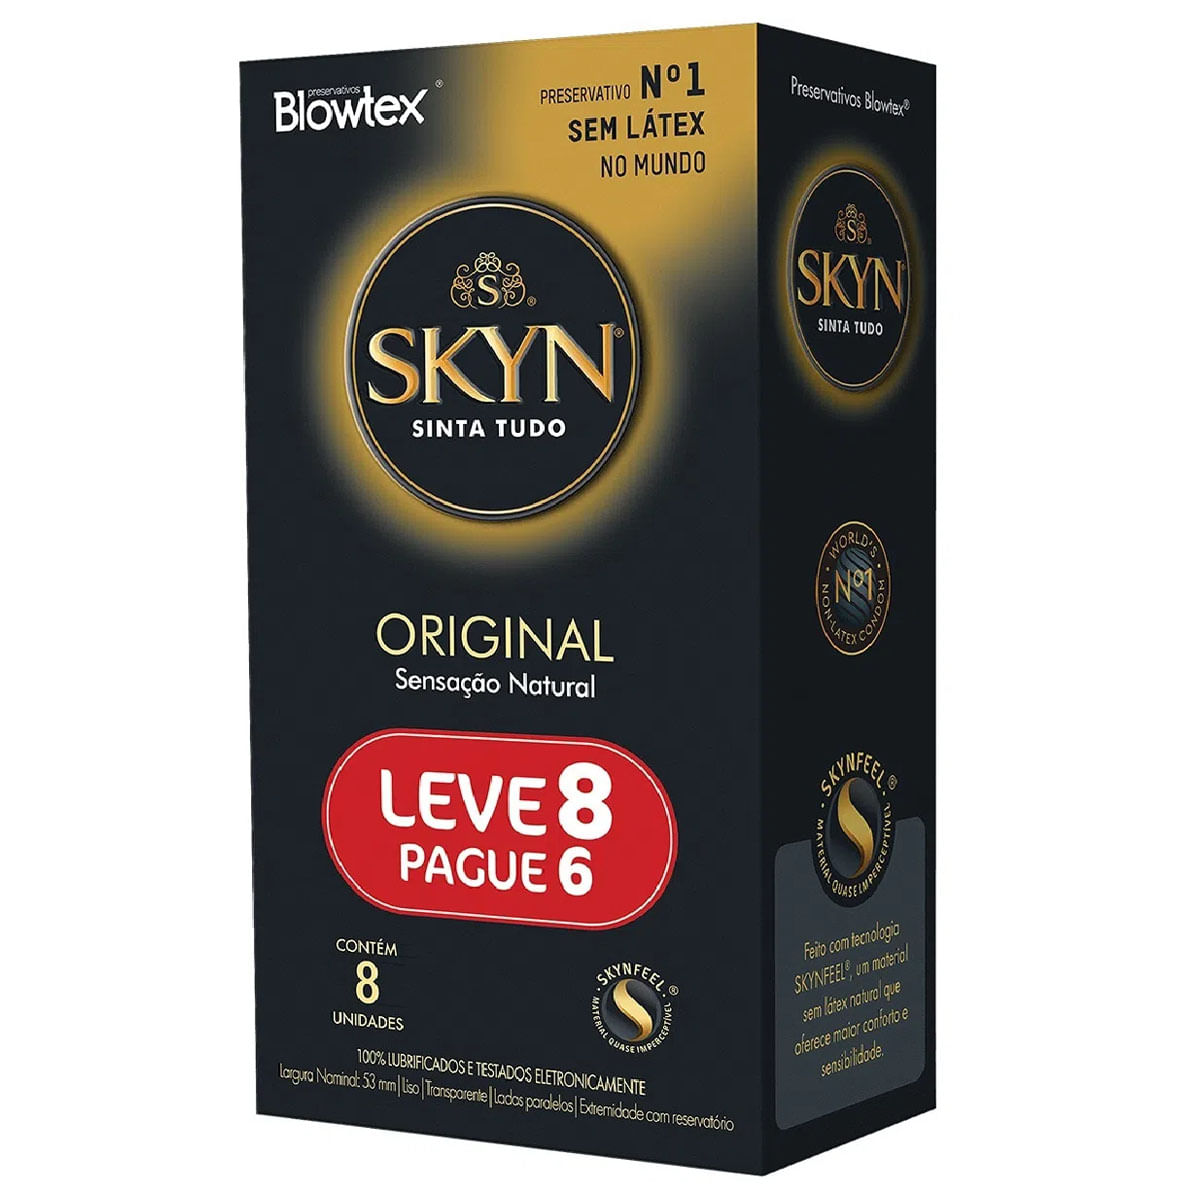 Skyn Original Preservativo Lubrificado sem Látex com Leve 8 Pague 6 unidades Blowtex